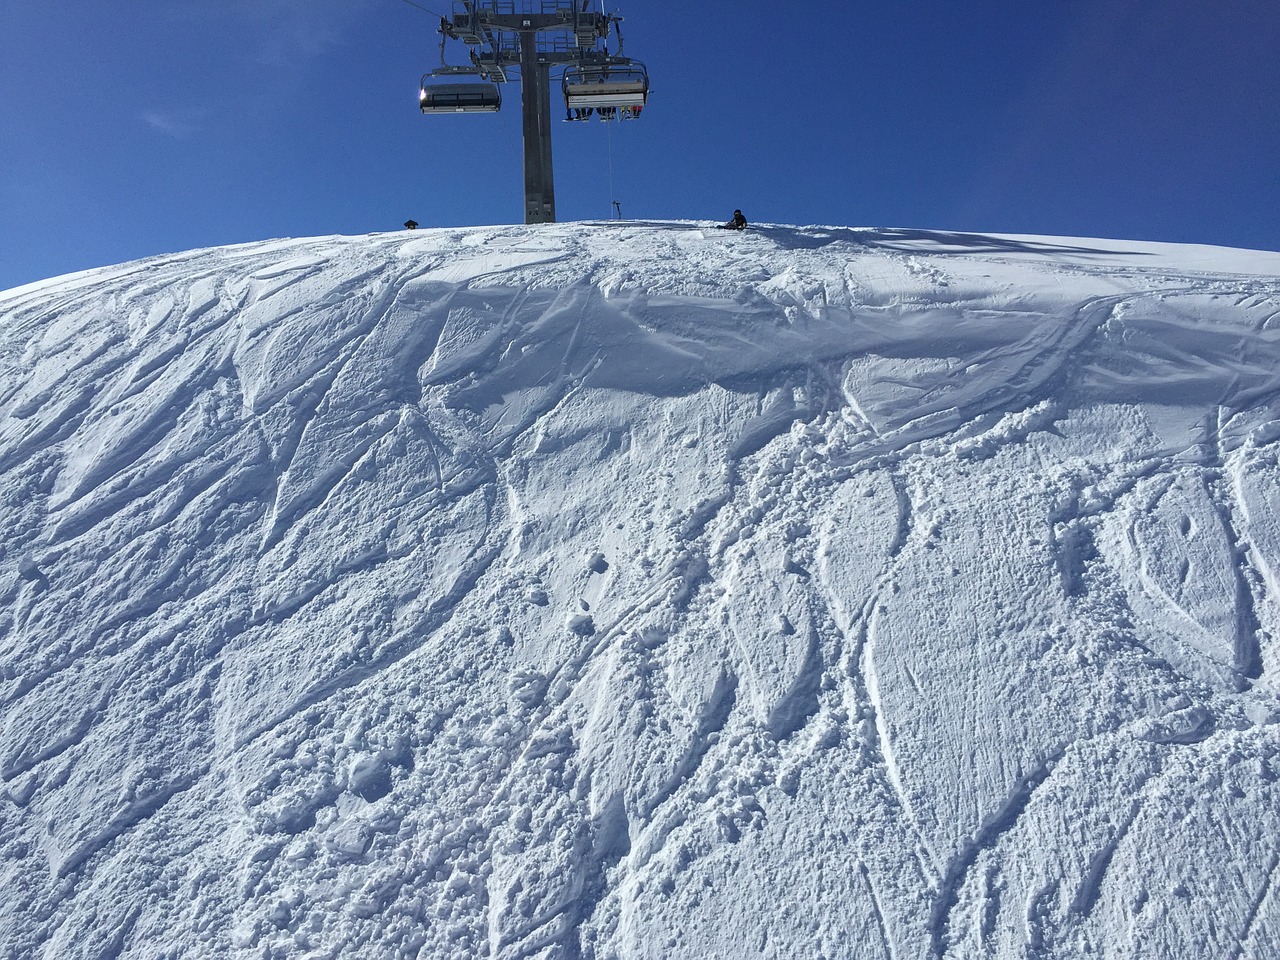 snow ski lift free photo